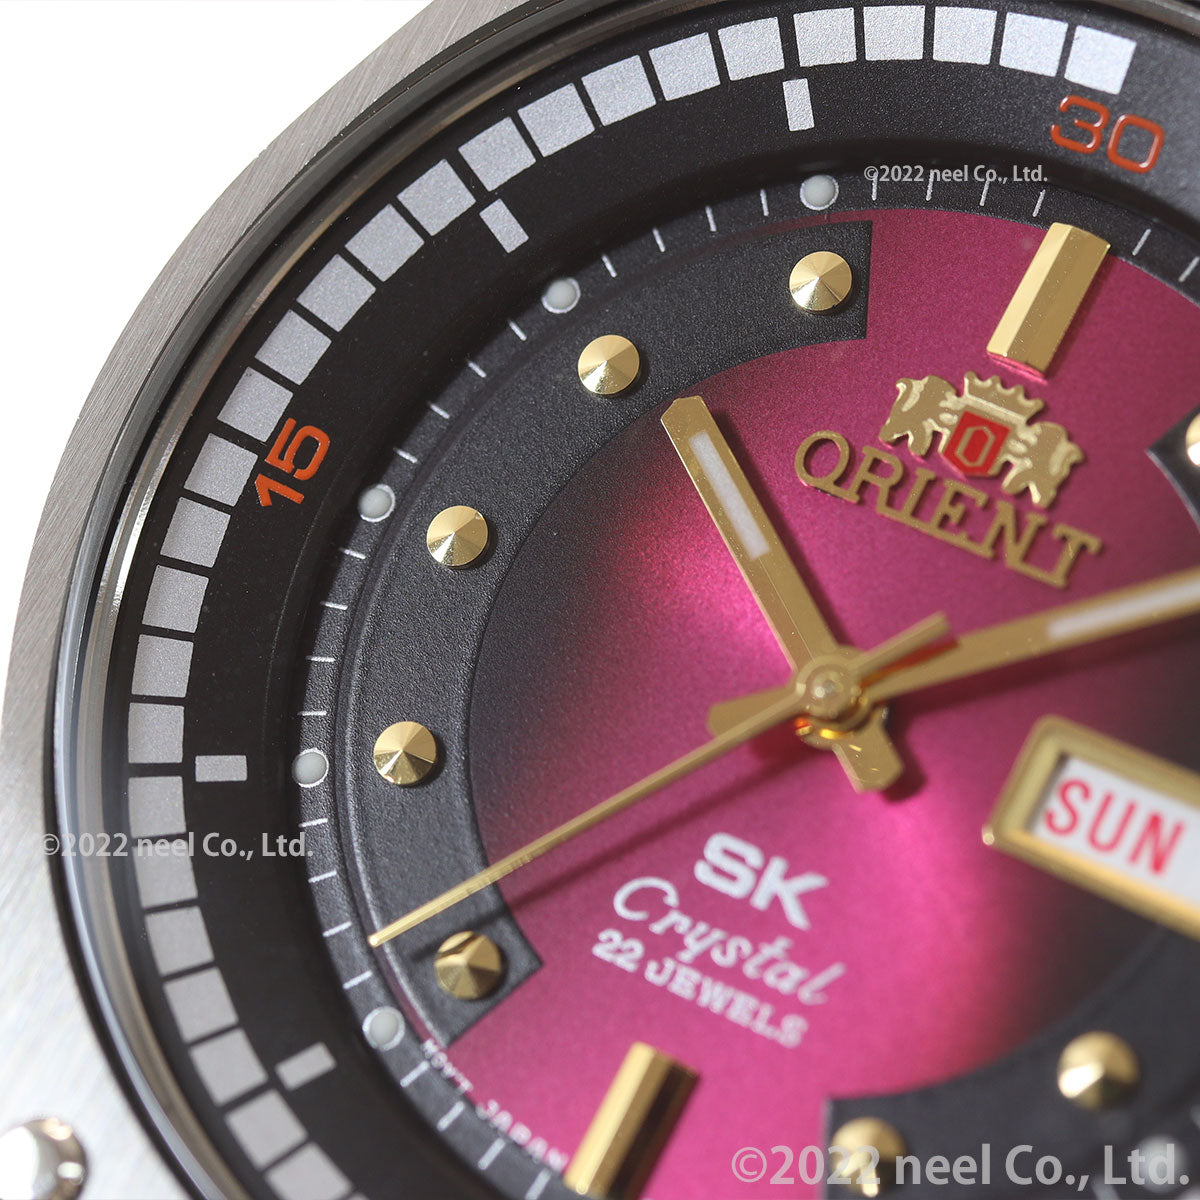 オリエント ORIENT SK 復刻モデル 腕時計 メンズ 自動巻き